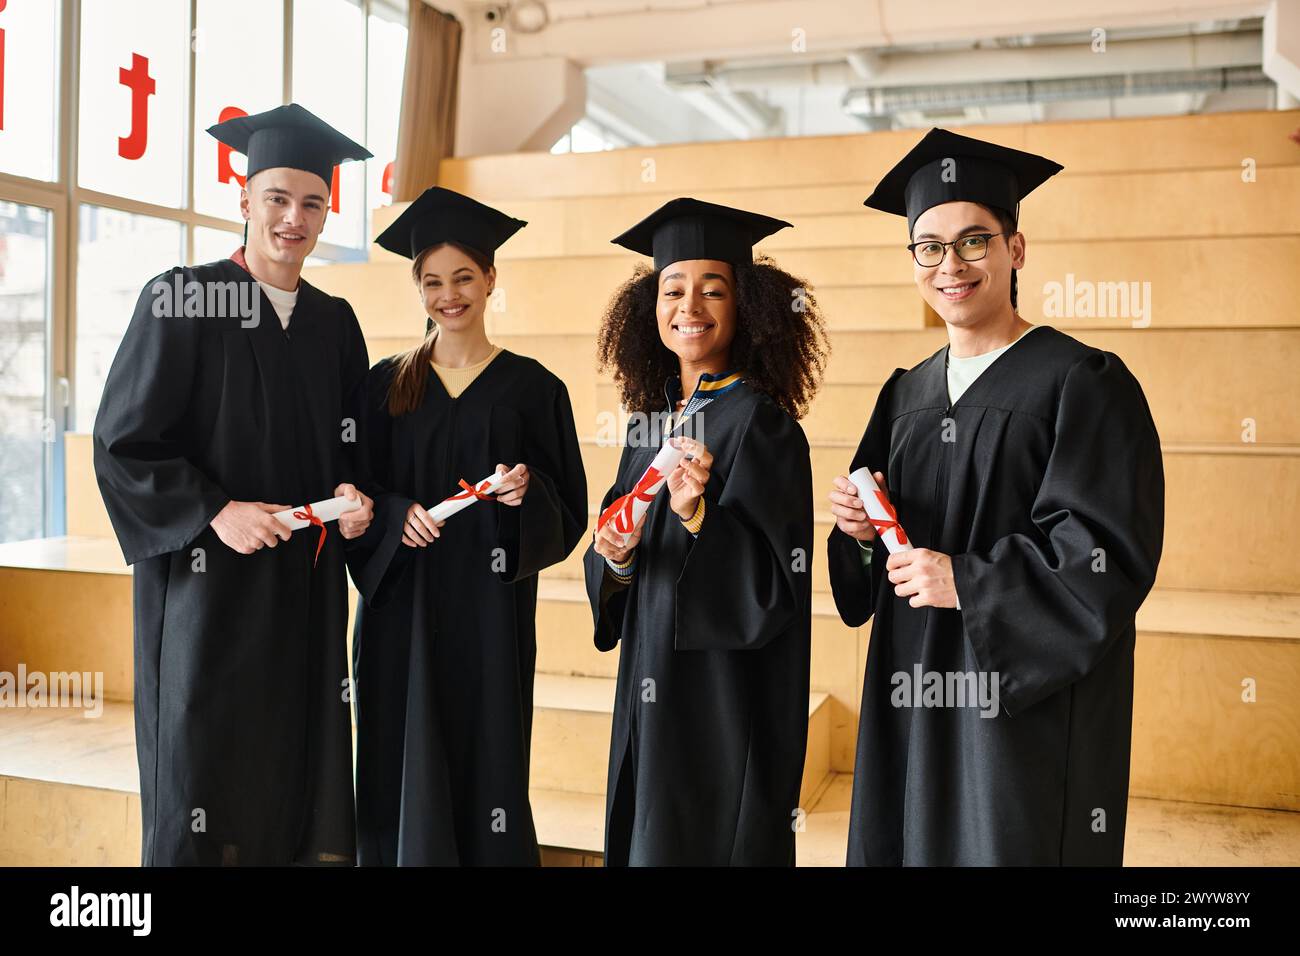 Verschiedene Gruppen von Studenten in Abschlusskleidern, die mit akademischen Kappen und Diplomen posieren Stockfoto